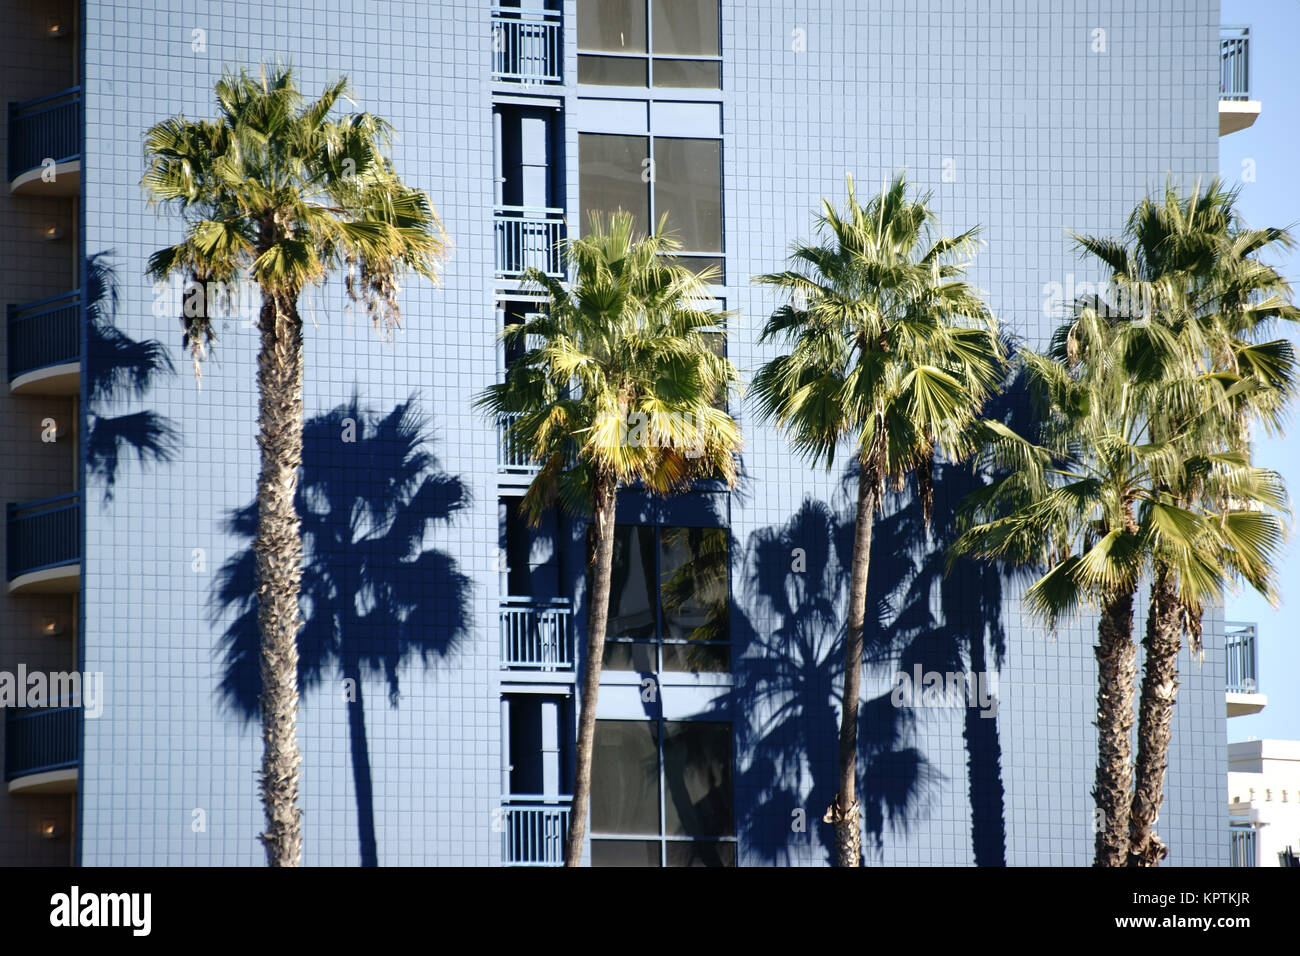 Eine Reihe Palmen wirft einen Schatten und die Wand une Wohngebäudes mit Balkonen. Banque D'Images